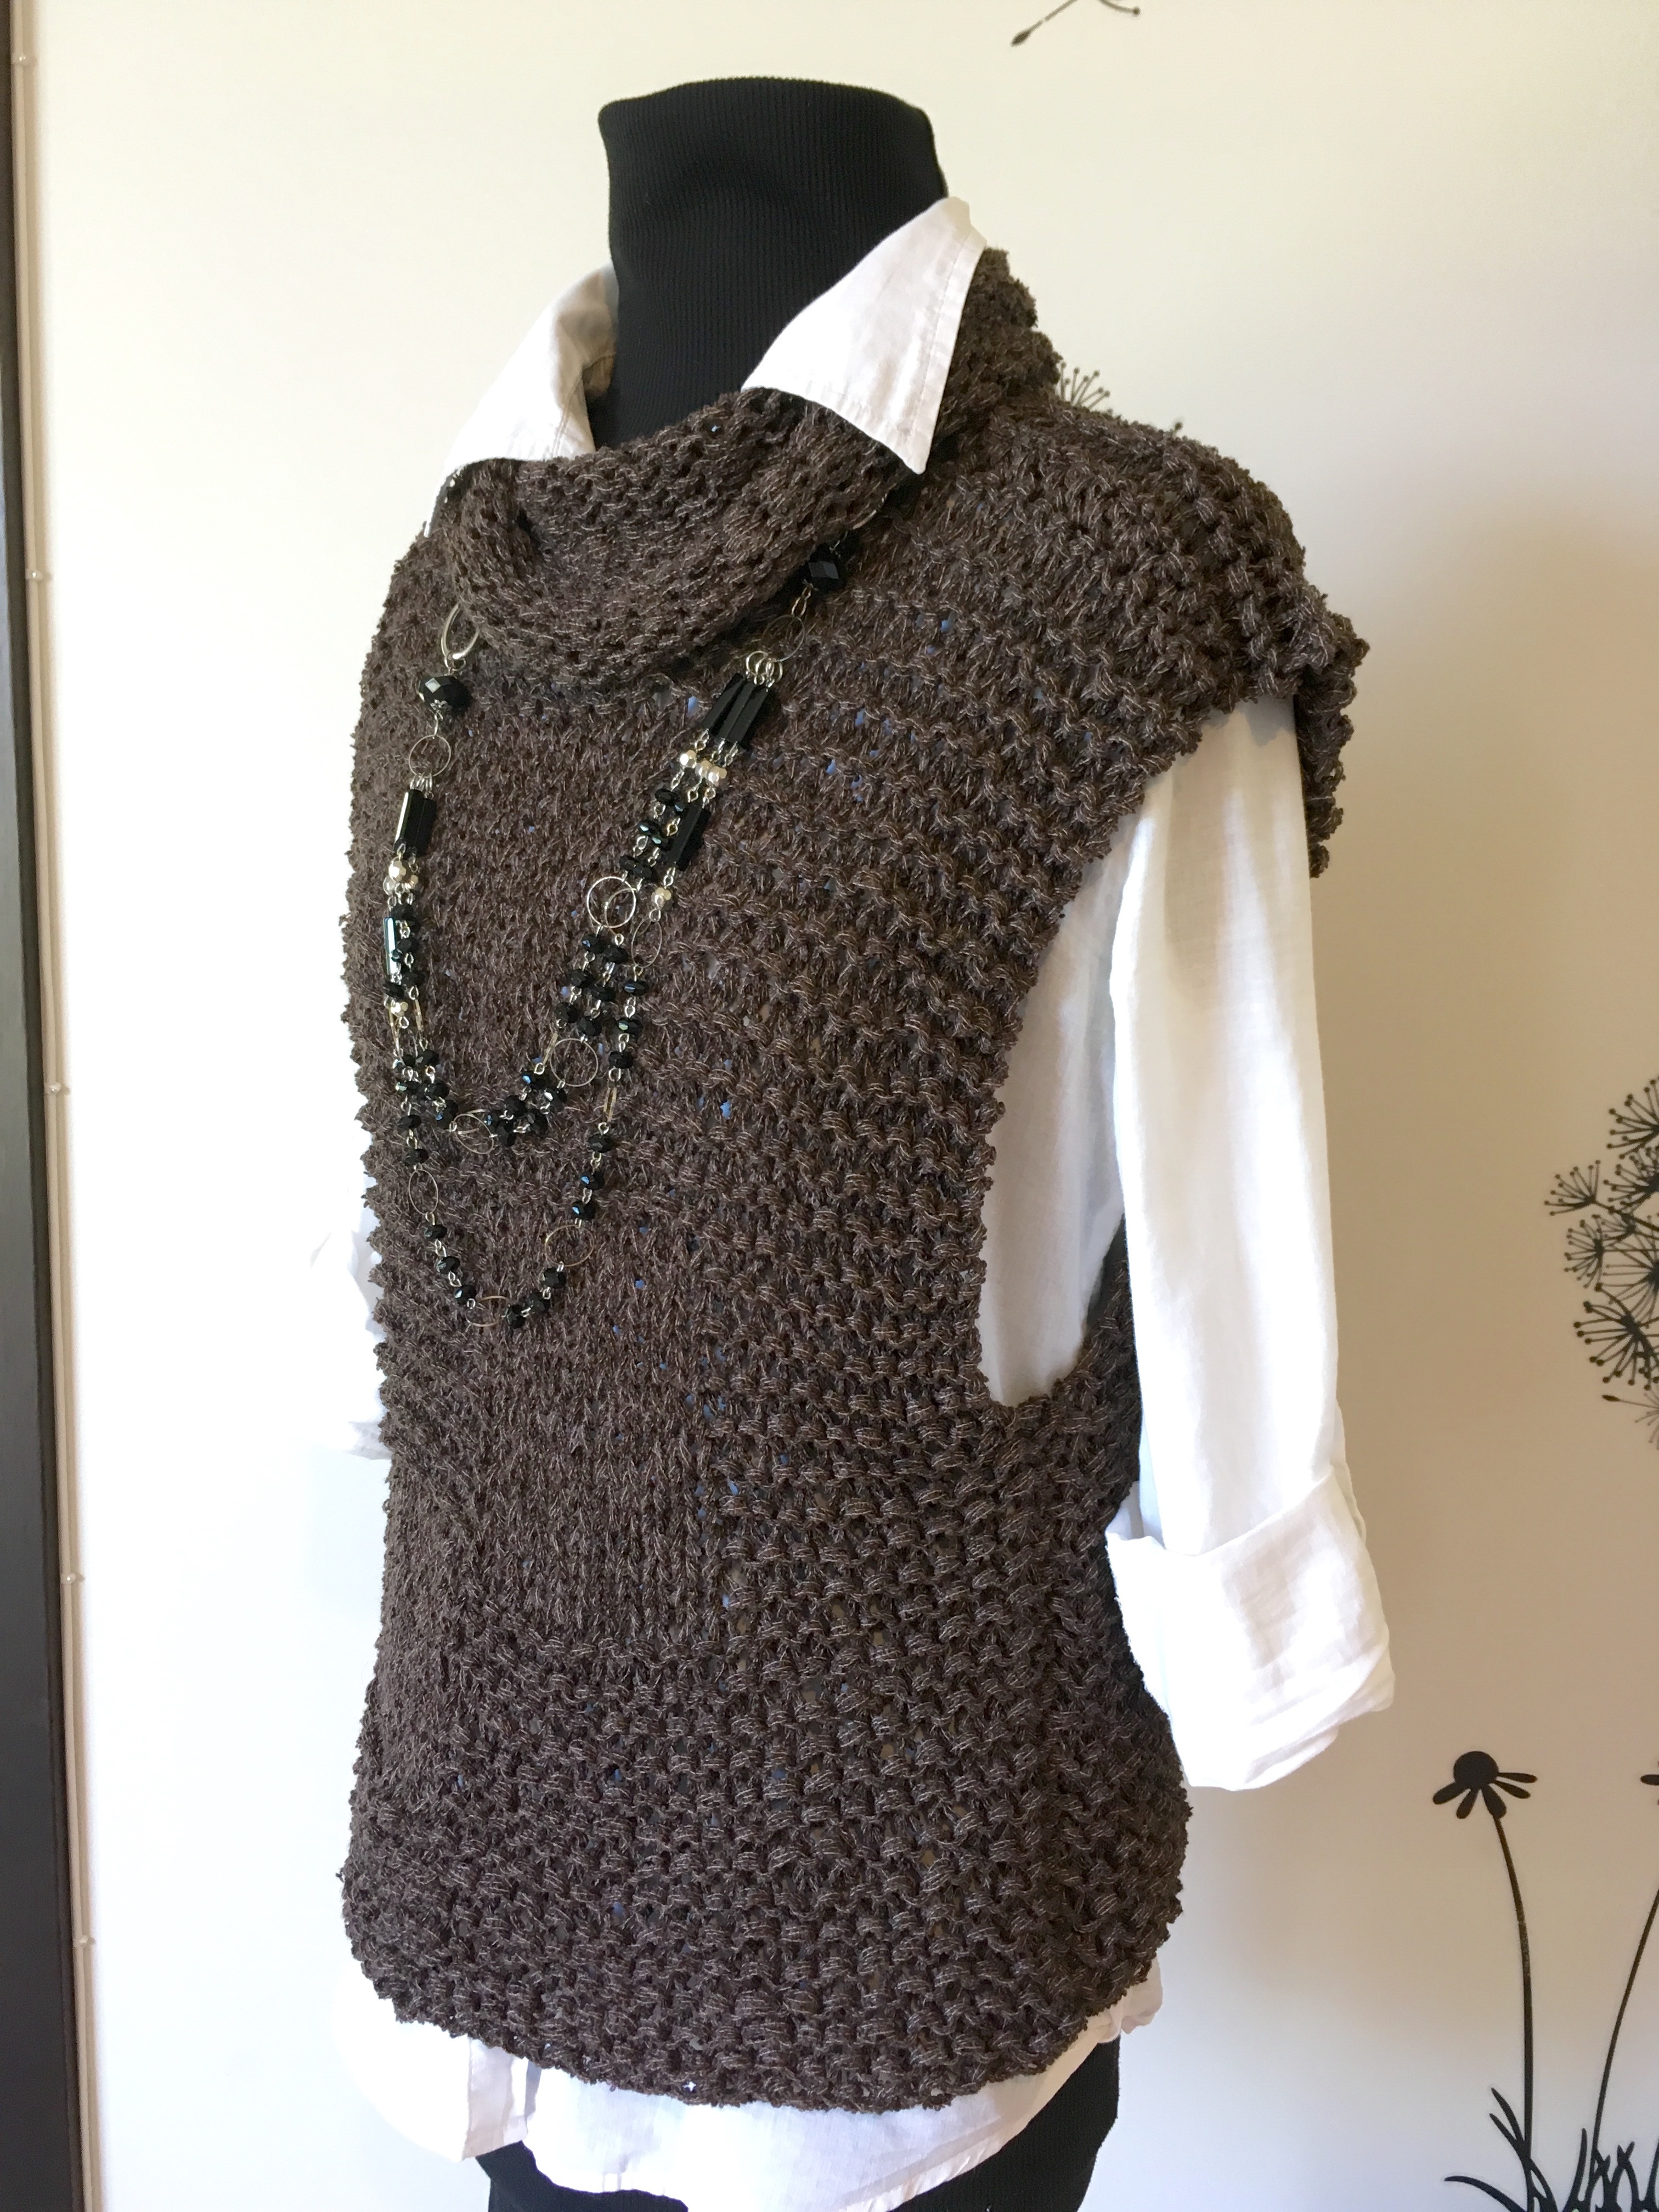 Women's Knit Sweater Vest knitting project by Lena T LoveKnitting